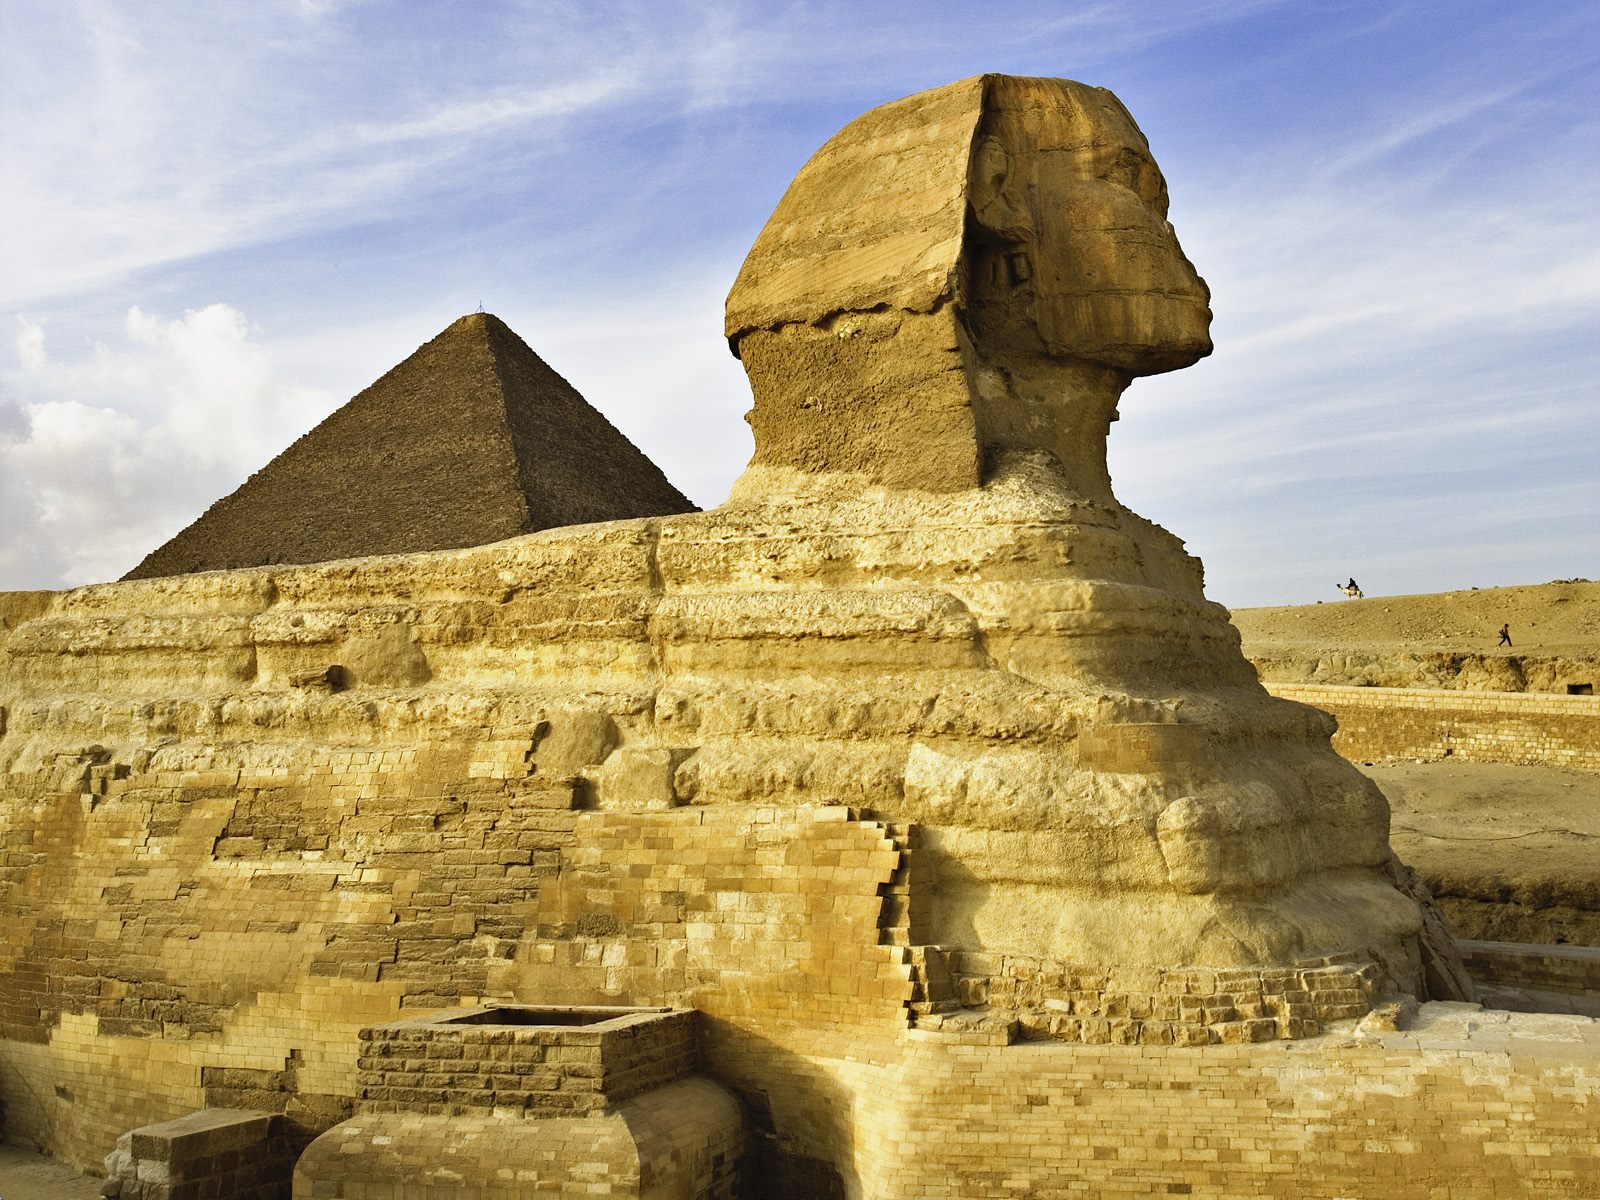 The Sphinx Near Cairo Egypt525992528 - The Sphinx Near Cairo Egypt - Thailand, Sphinx, Near, Egypt, Cairo